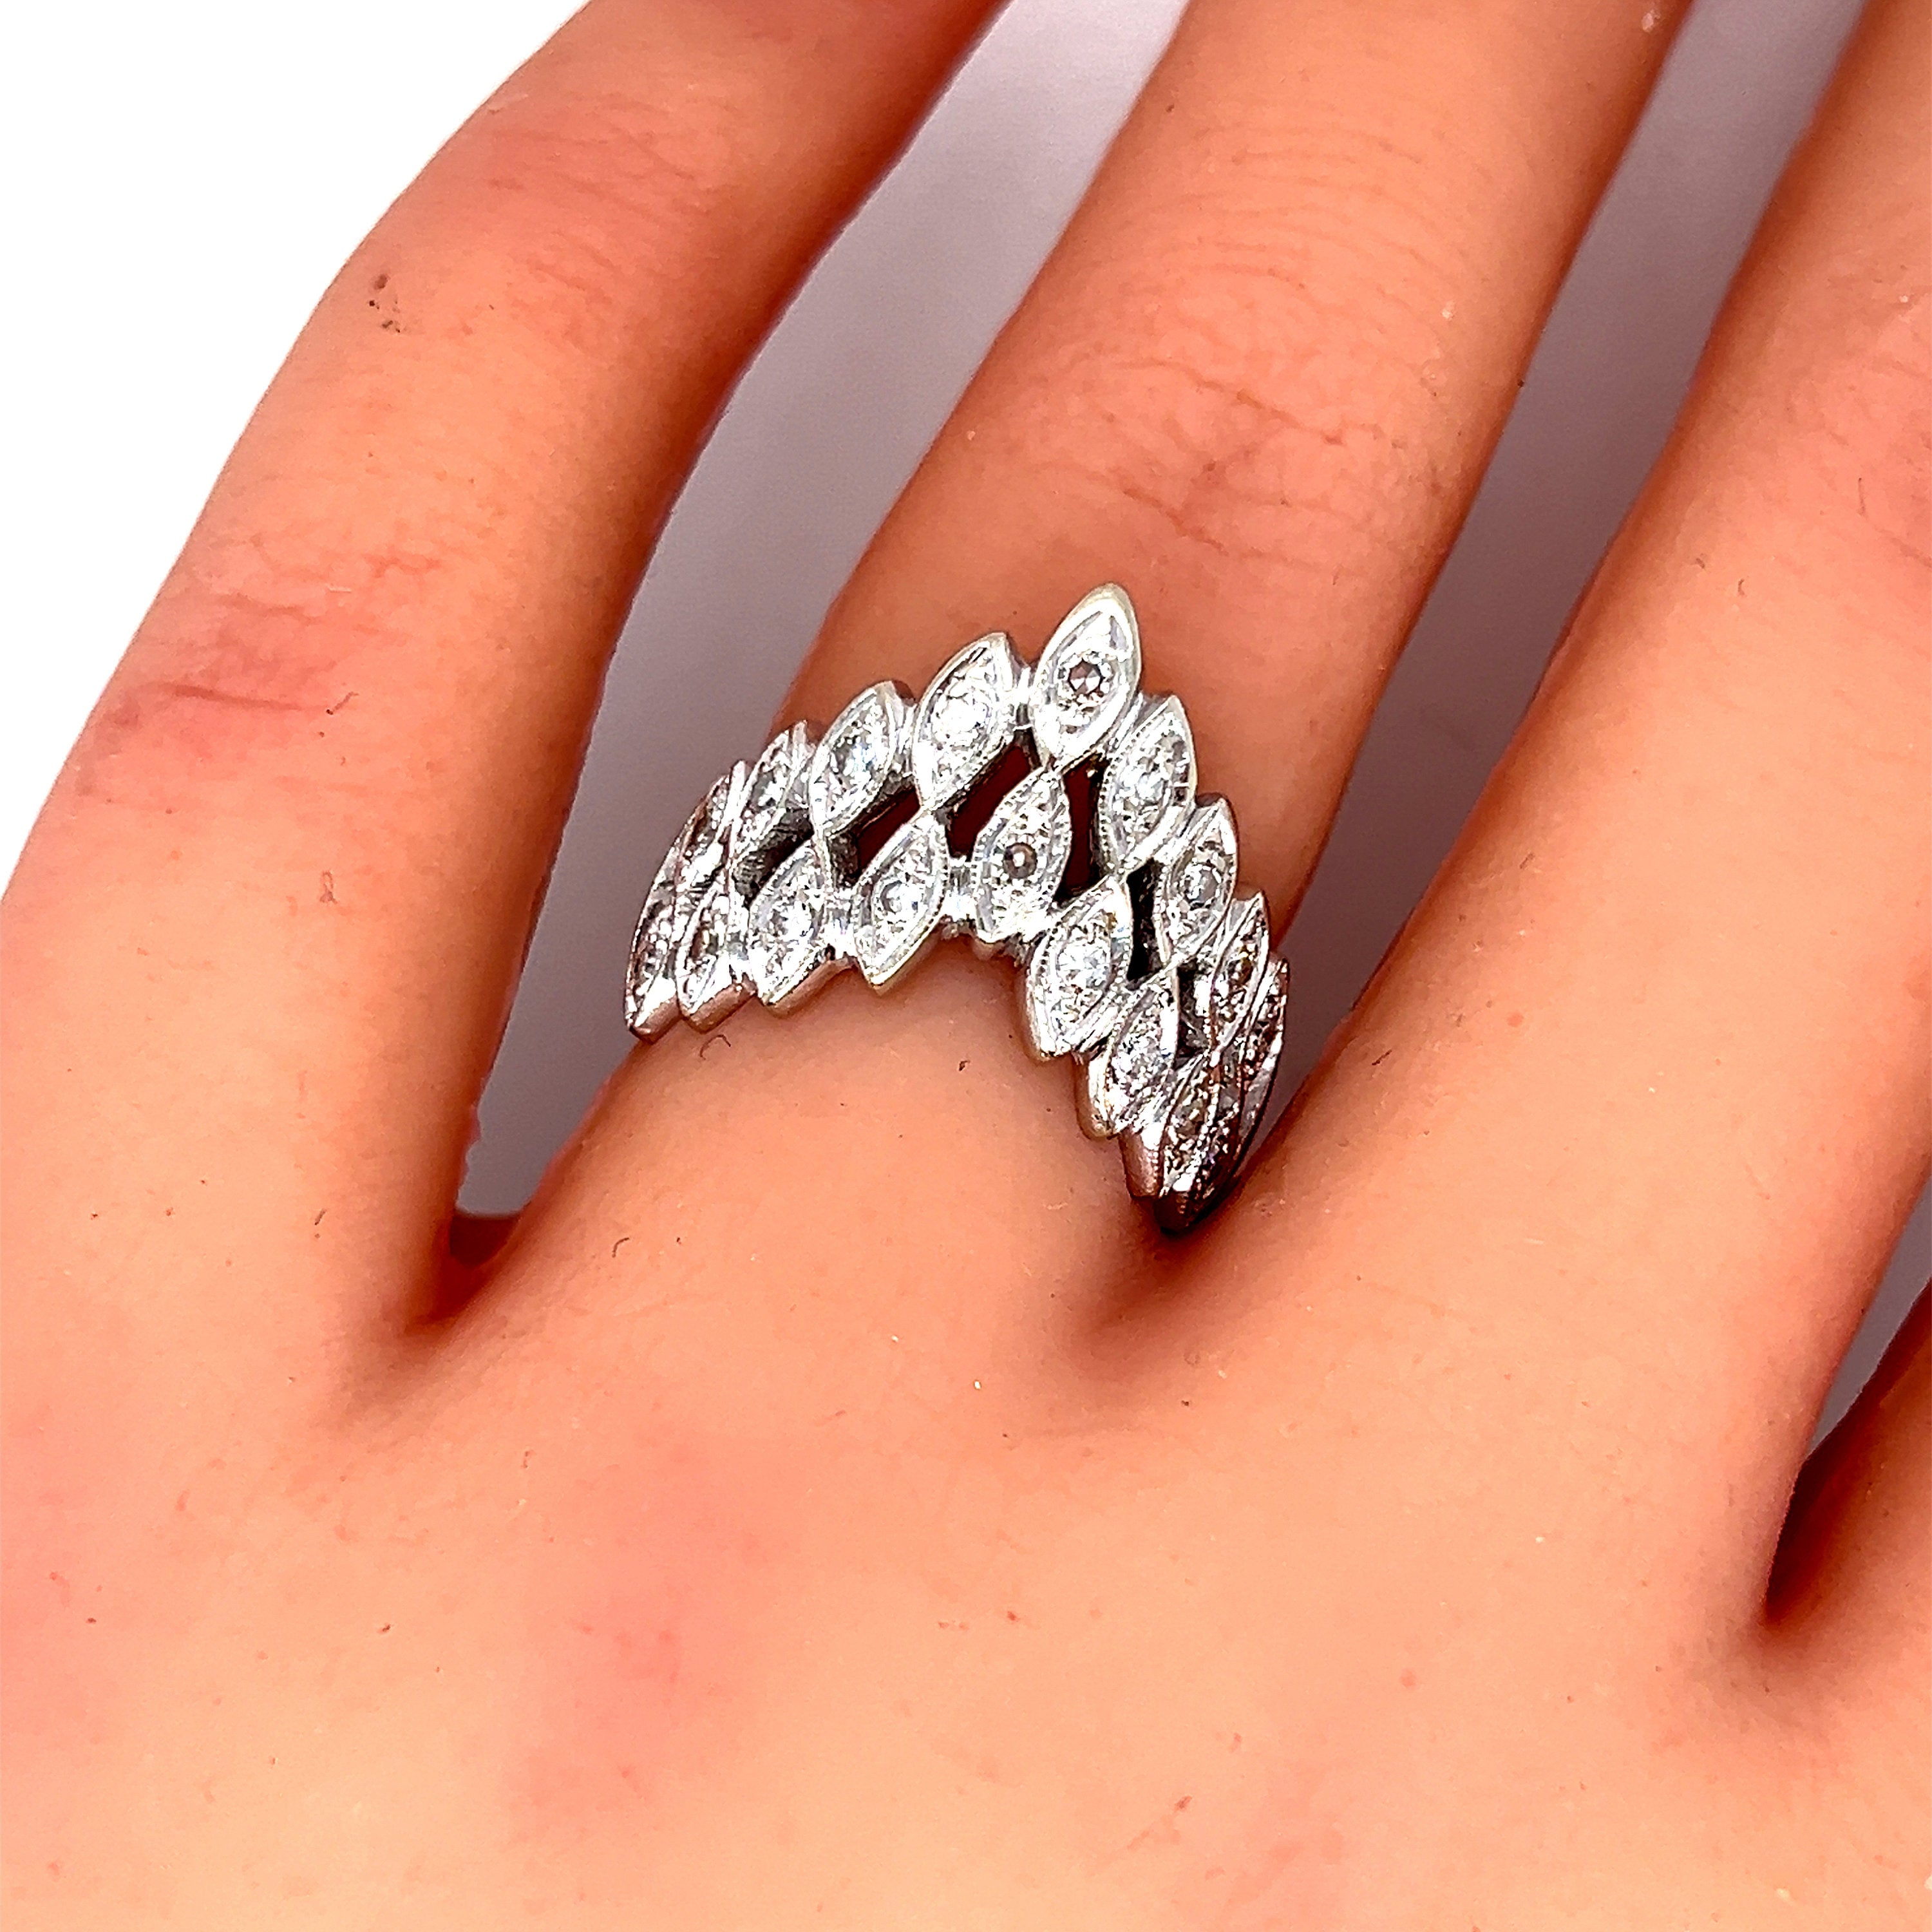 Vintage Diamond Tiara Ring in 14K White Gold - 0.36ct.